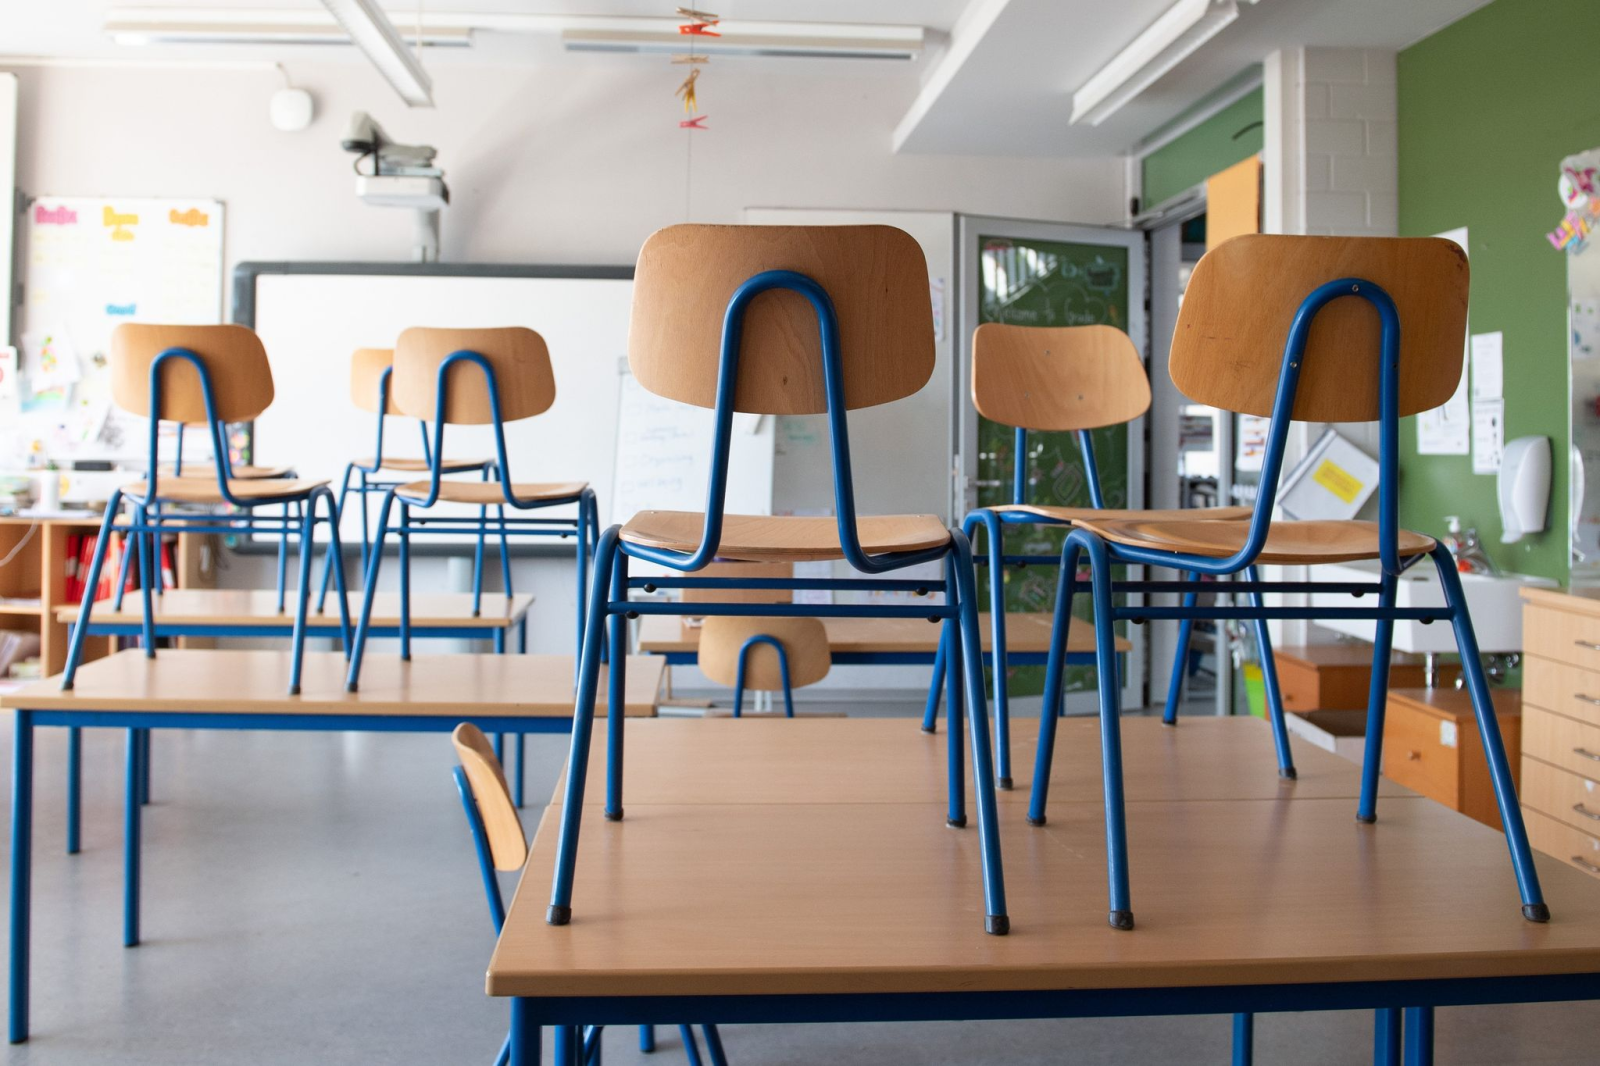 Stühle stehen in einem Klassenzimmer auf den Tischen.